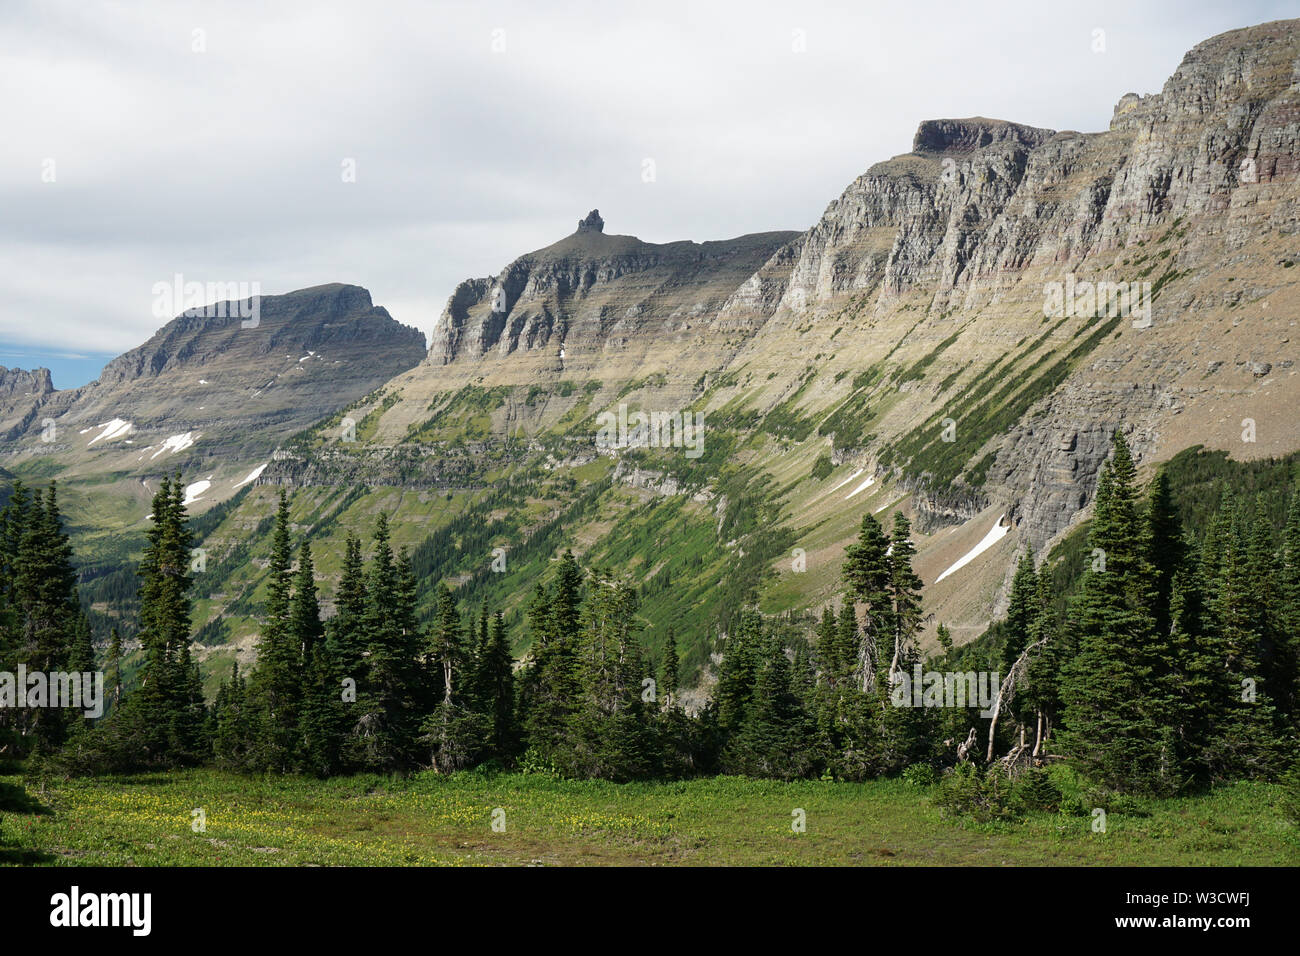 Der Garten Wand, eine eiszeitliche Arete im Glacier National Park, Montana. Fels ist Teil der sedimentären Proterozoikums Riemen Supergroup. Stockfoto